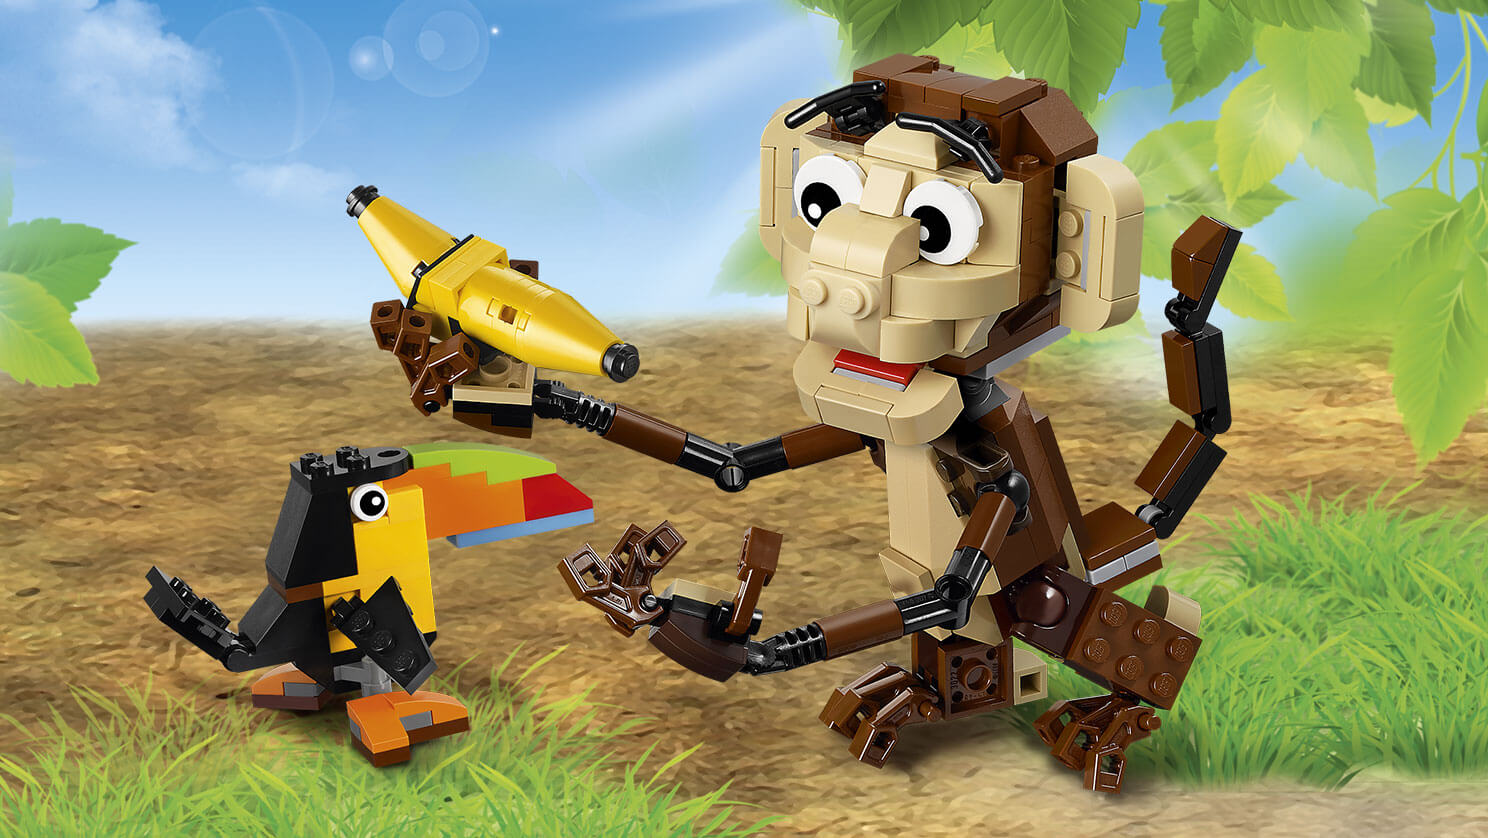 Forest 31019 - Creator Sets - LEGO.com for kids